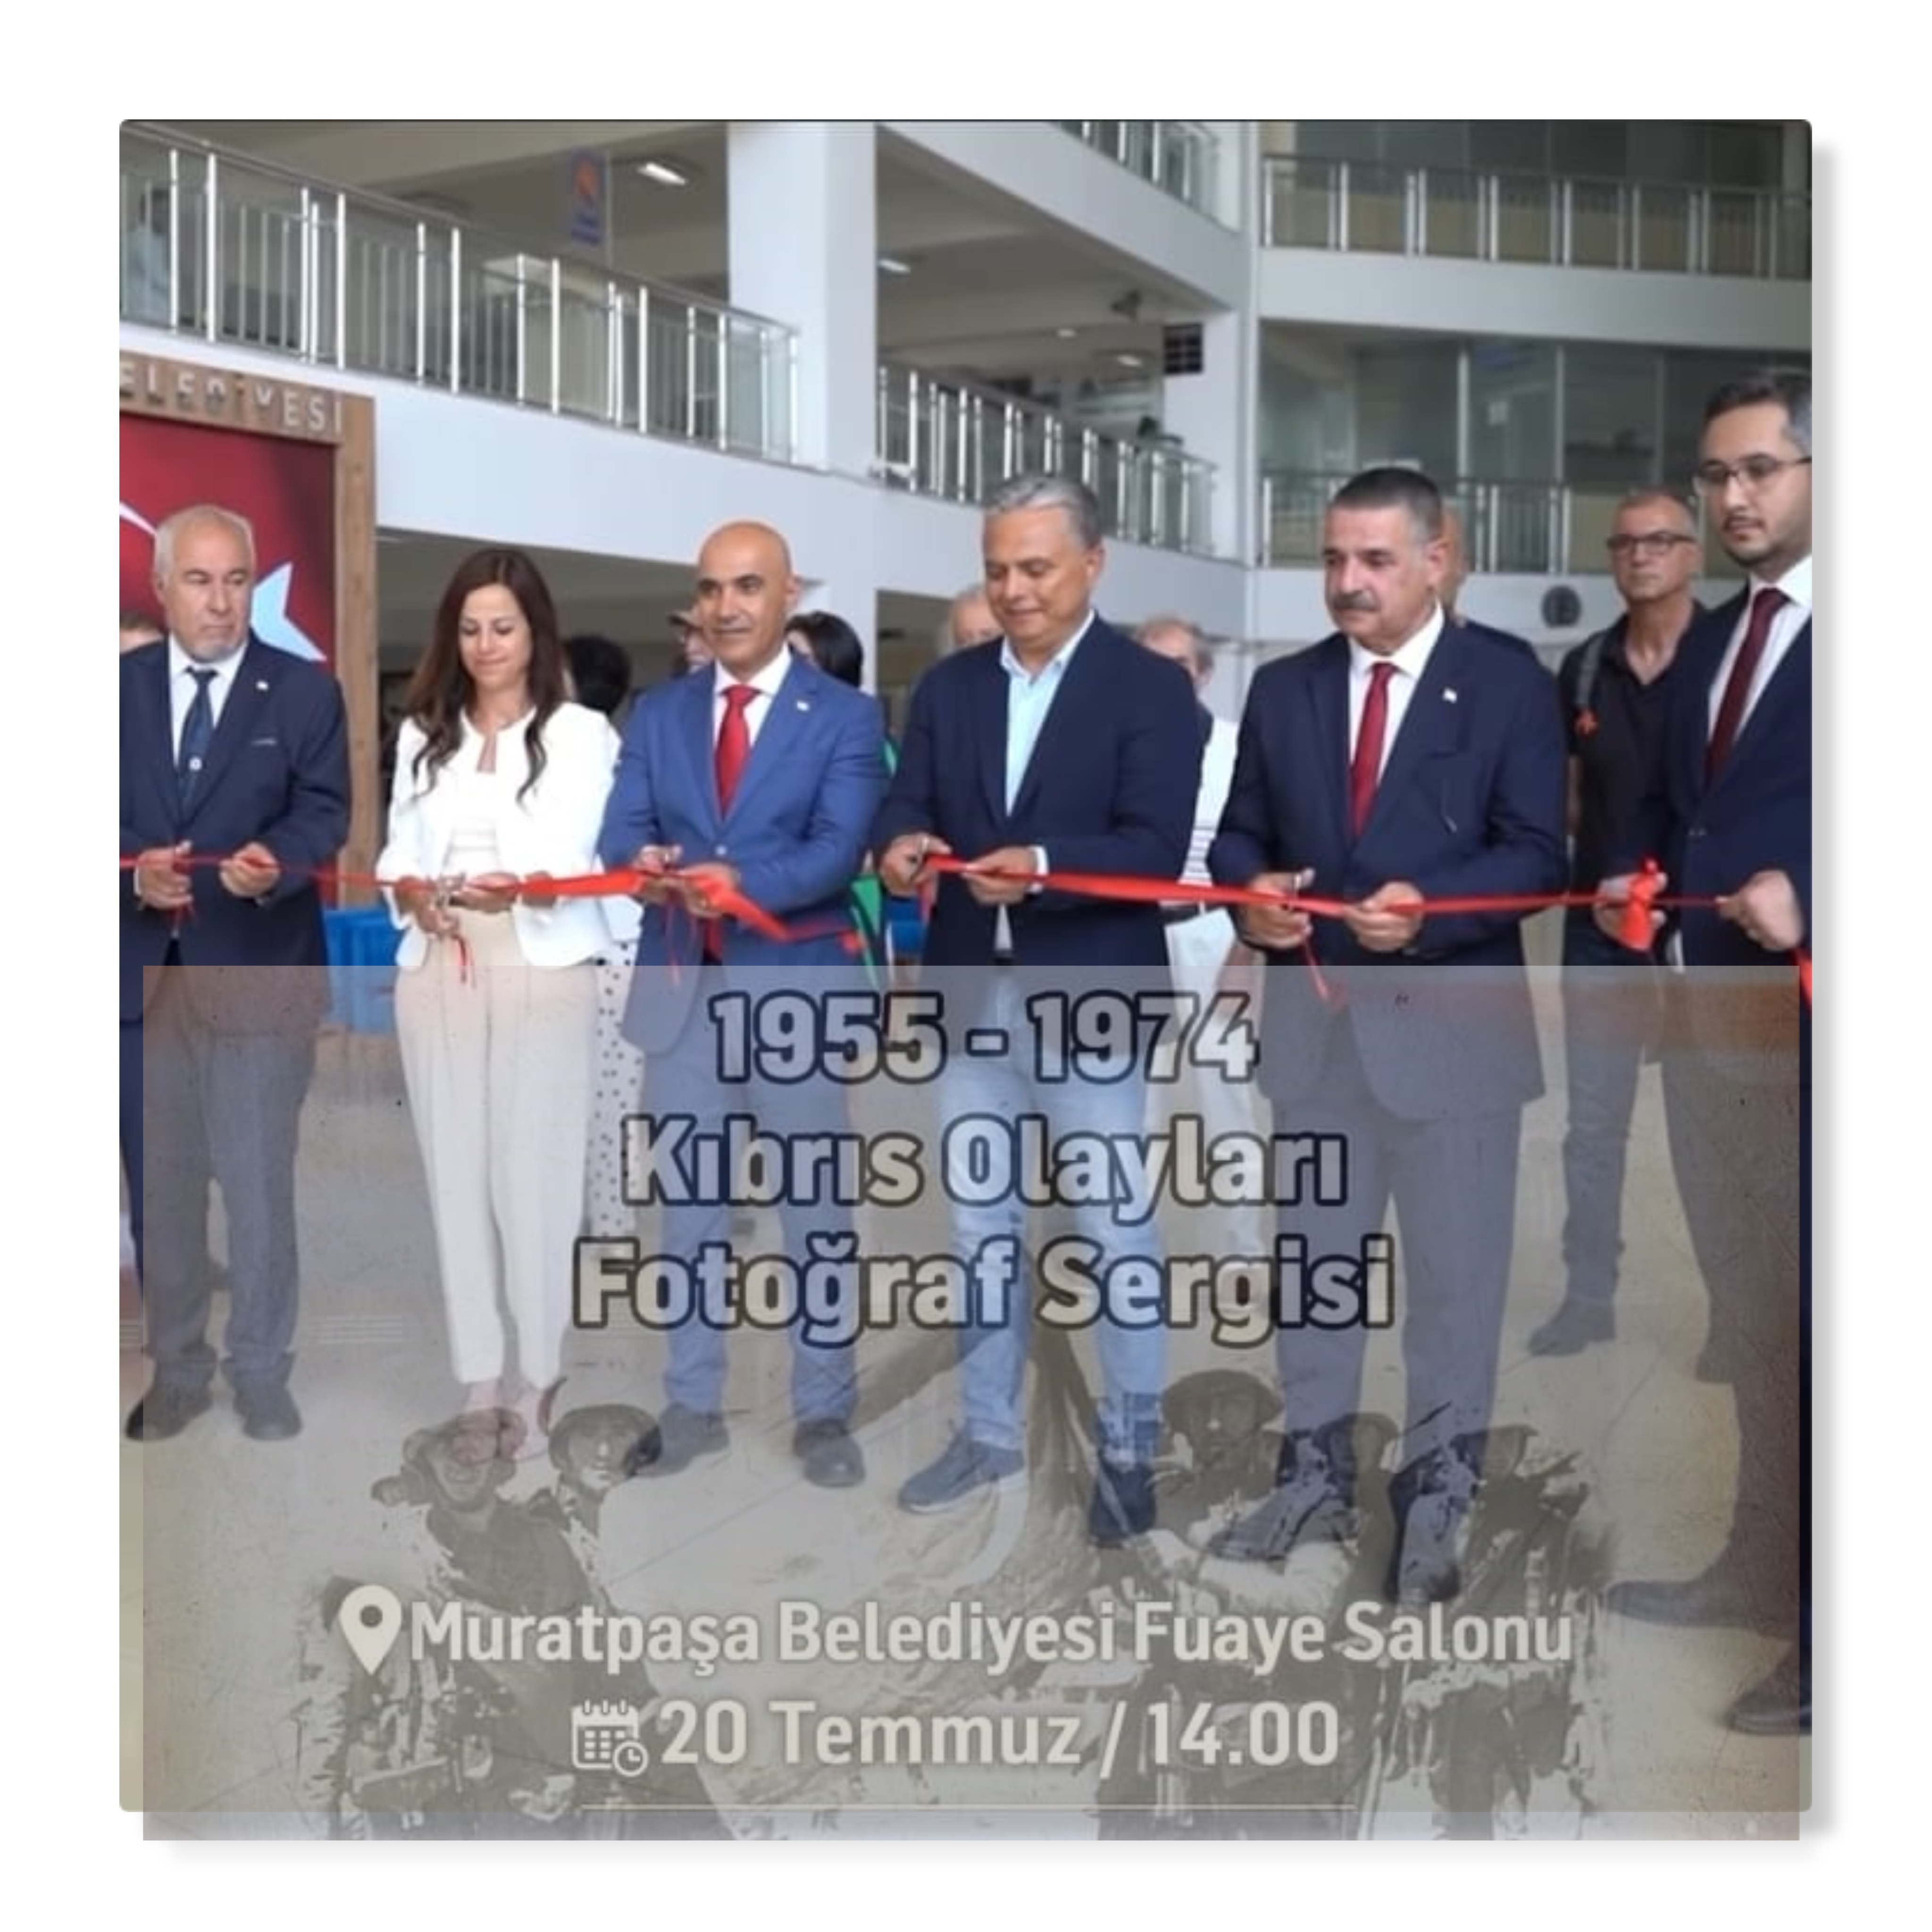  Muratpaşa Belediyesi ve Kıbrıs Türk Kültür Derneği Antalya Şubesi  işbirliğiyle düzenlenen 1955-1974 Kıbrıs Olayları Fotoğraf Sergisi açıldı.